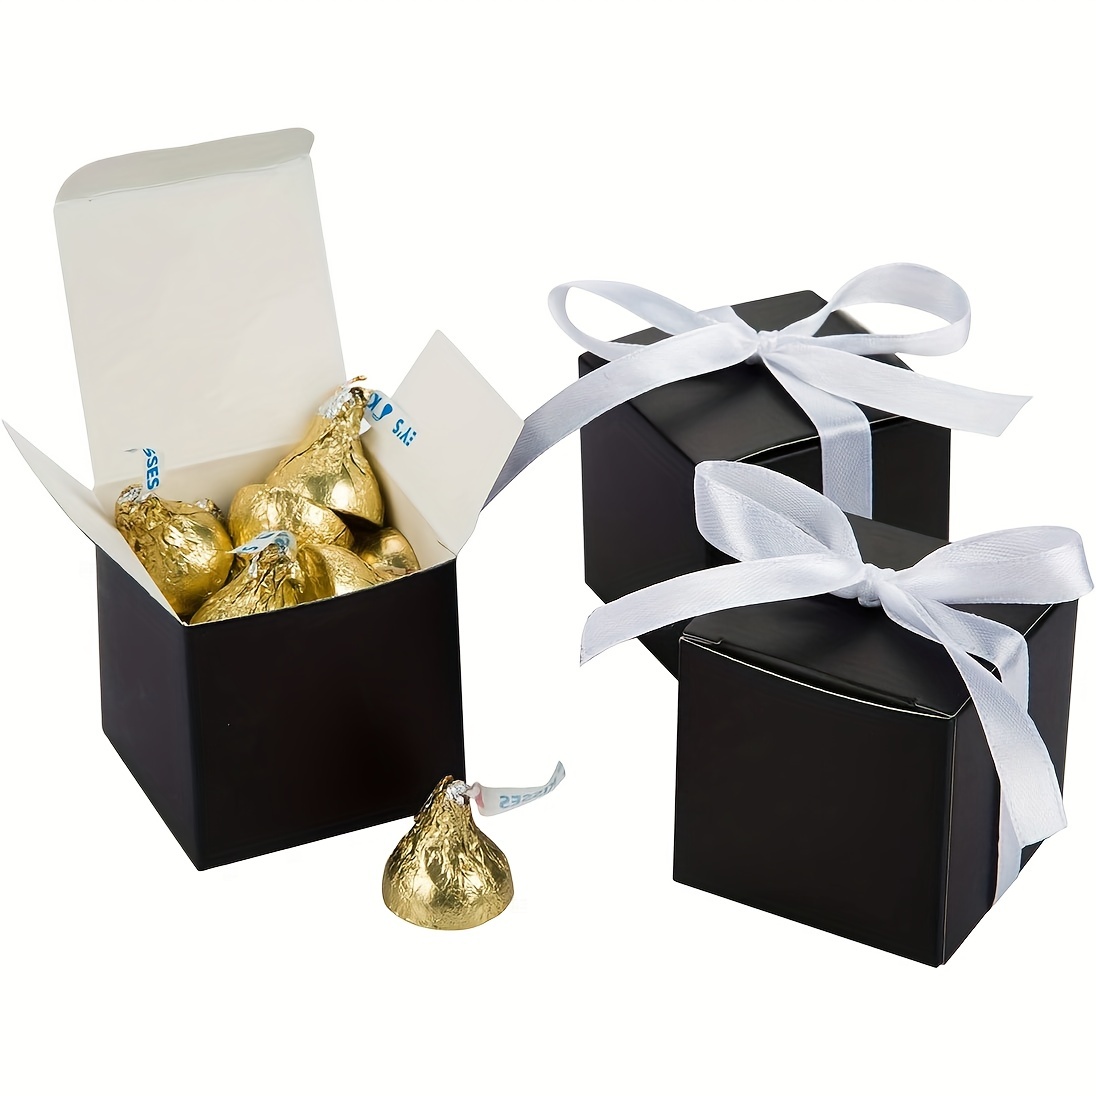 Youliy Petite boîte de rangement en métal argenté avec couvercle coulissant  pour argent, monnaie, bonbons, clés – 5 tailles